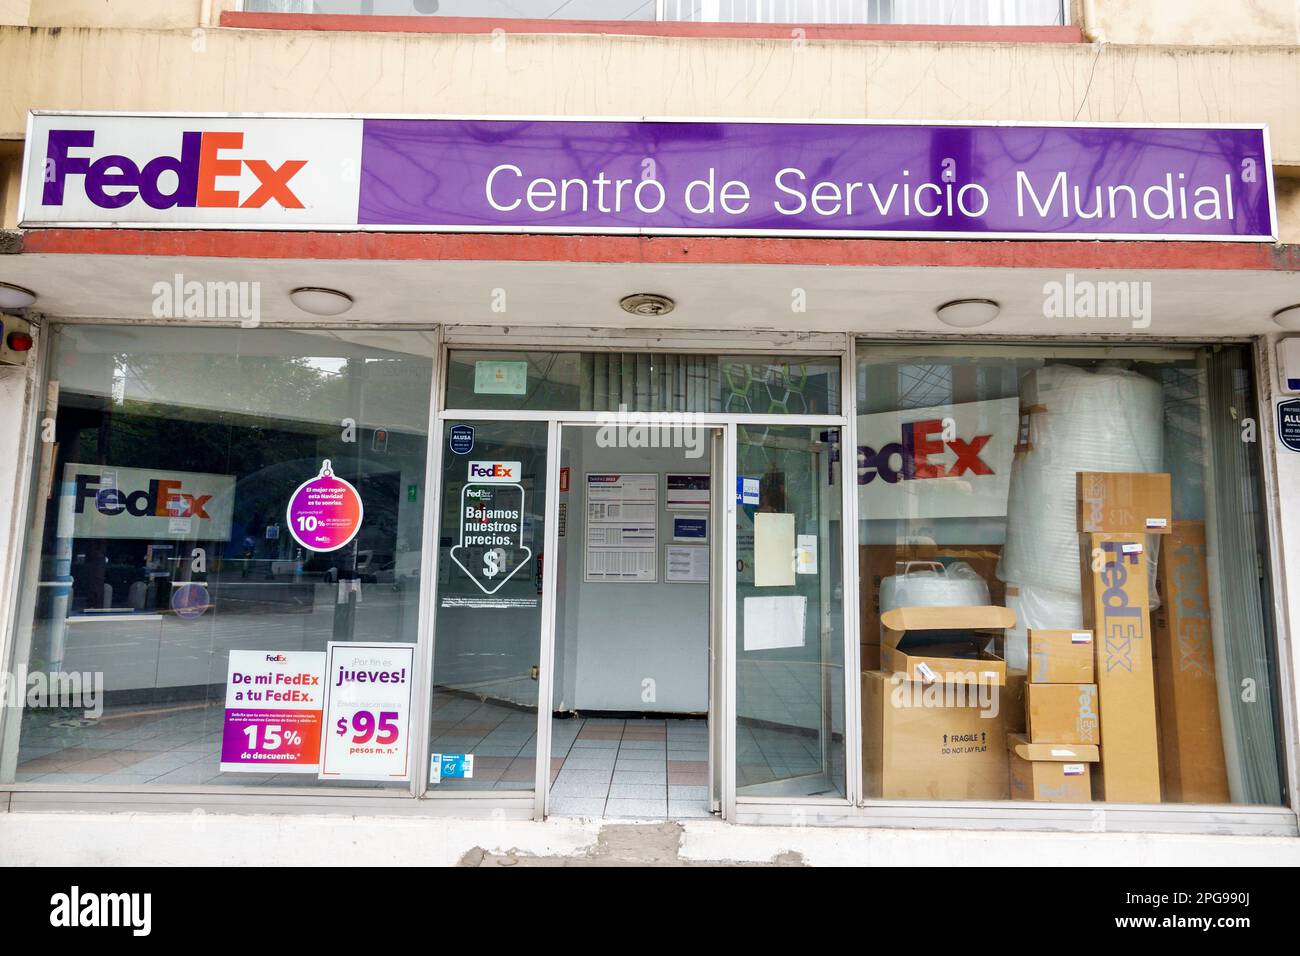 Città del Messico, Anzures, esterni FedEx, edifici, ingresso frontale, segnaletica, promozione, banner pubblicitario Foto Stock